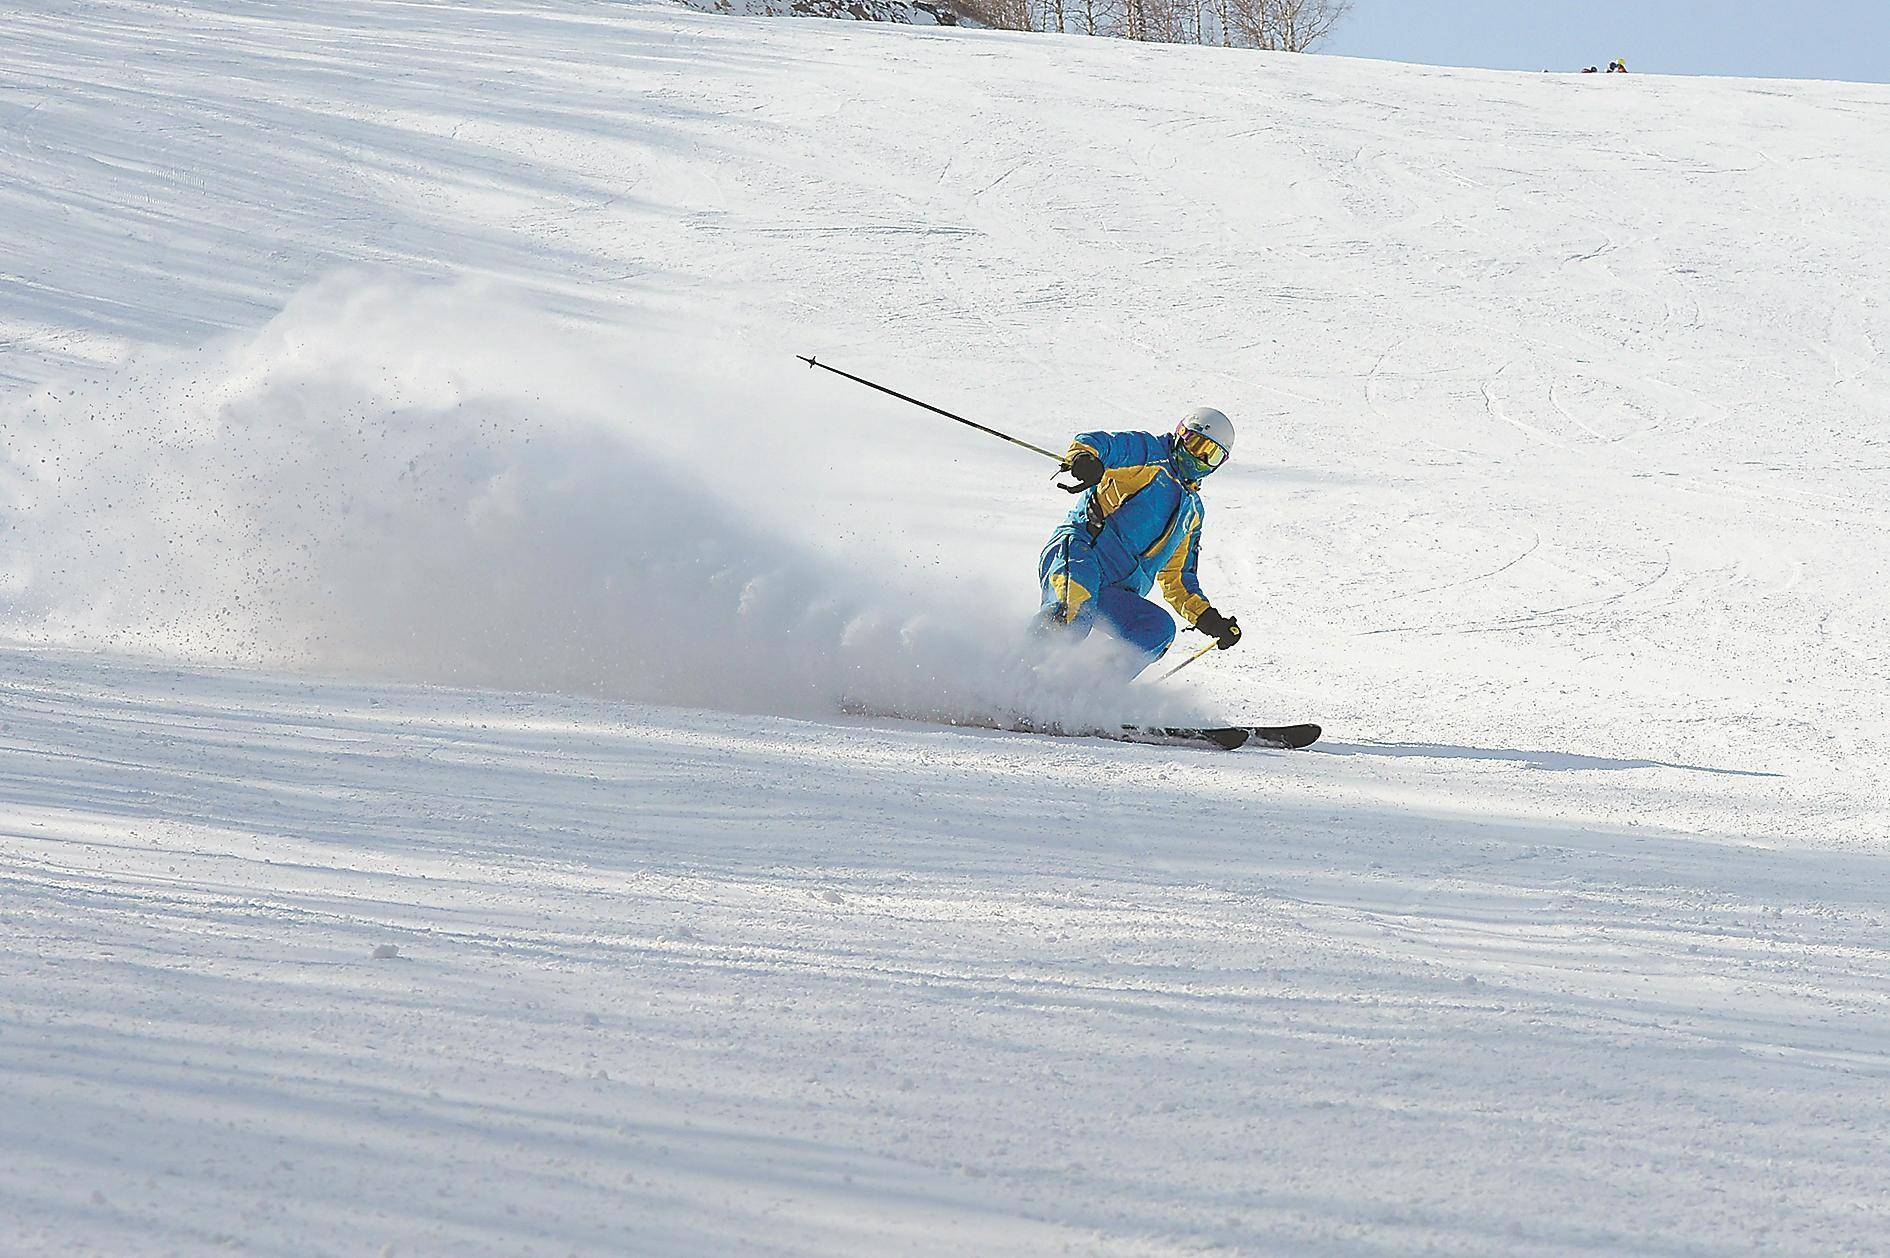 国内知名滑雪教练遇难引发讨论 面对滑雪的危险我们该怎么做？,滑雪